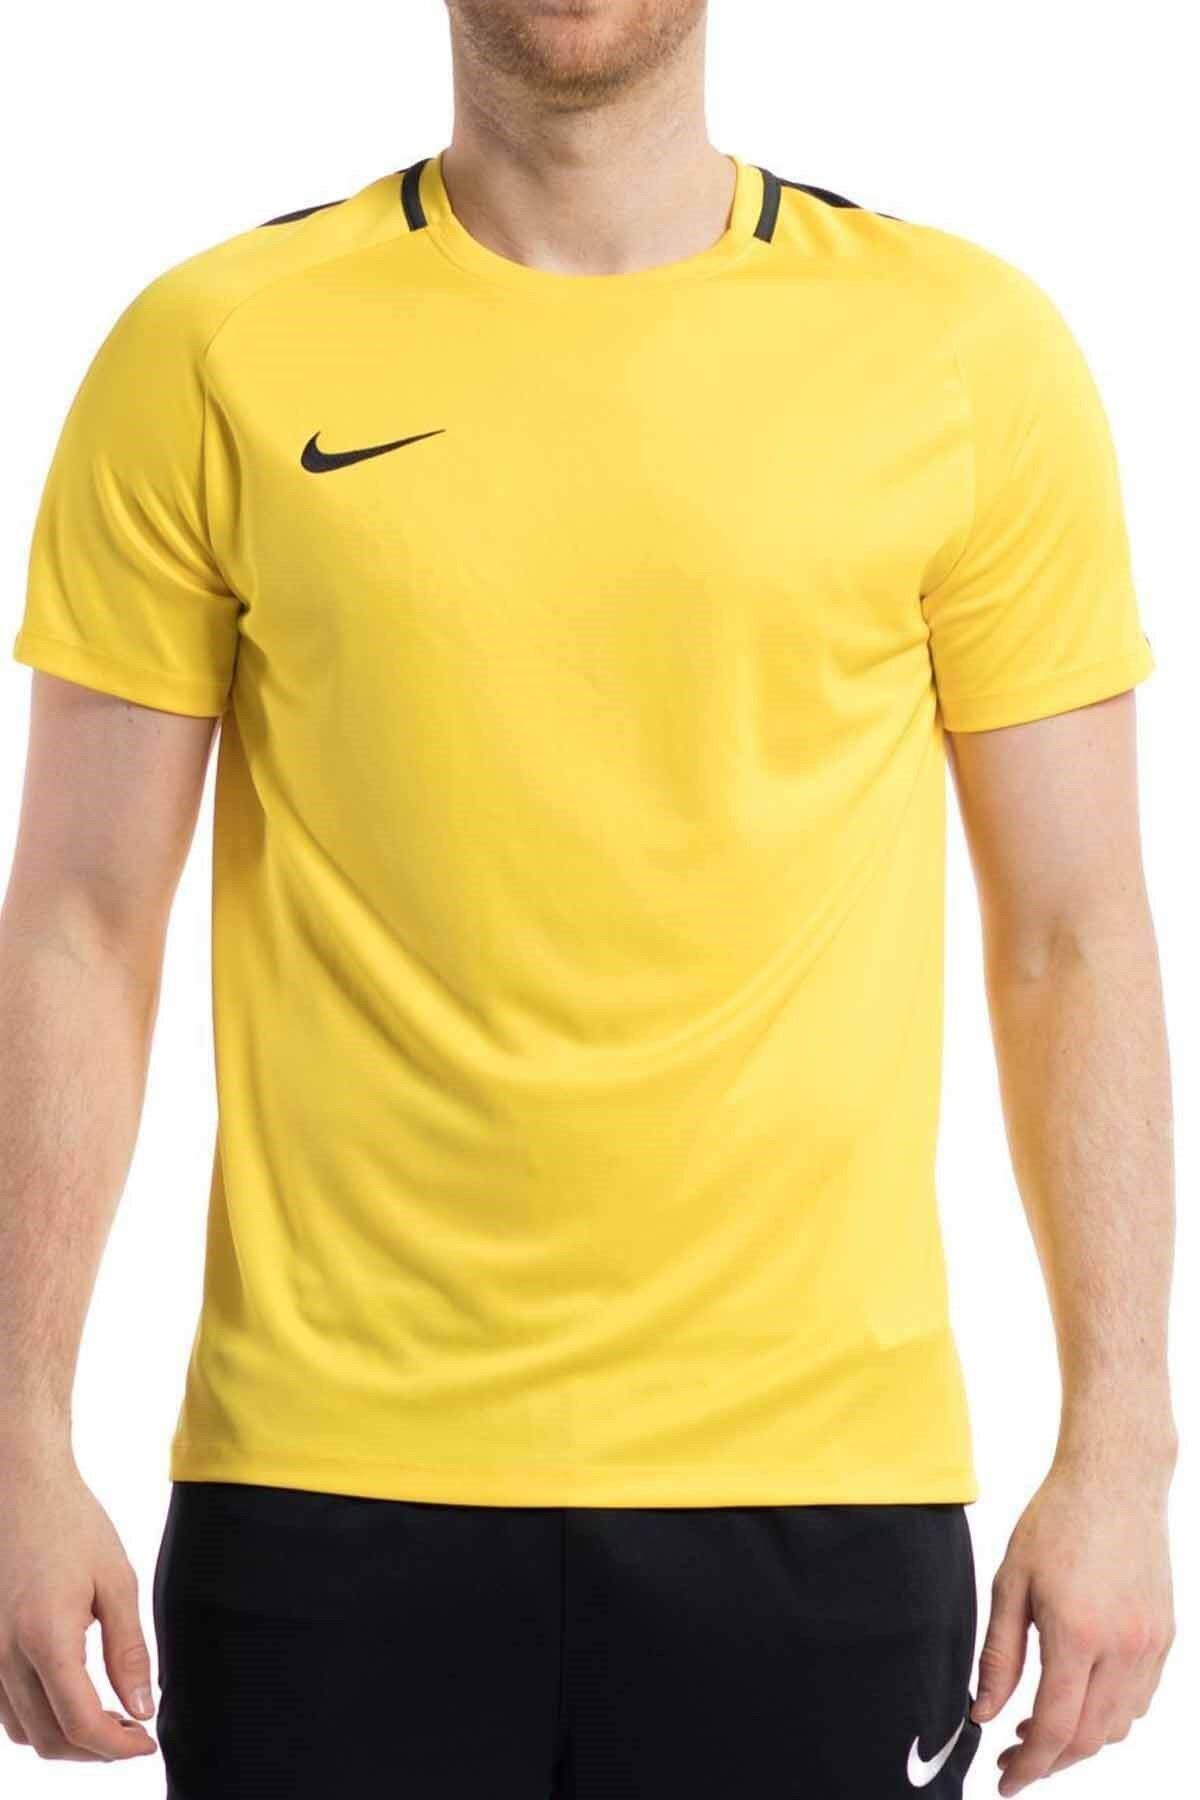 Nike Dri-fit Acdmy Erkek Tişört 893693-0719-sarı